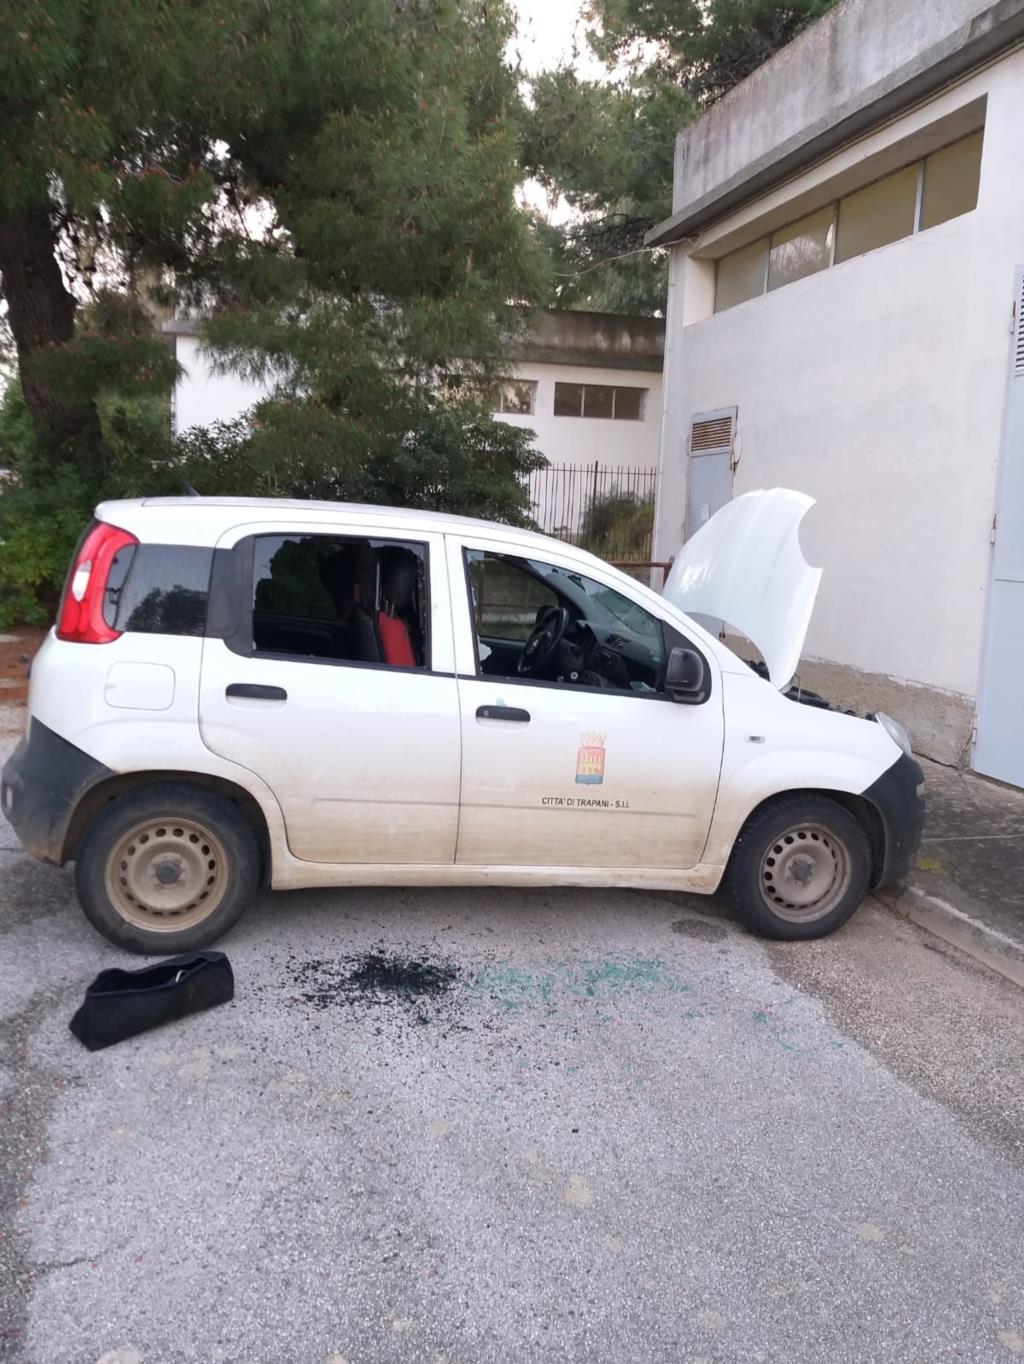 Nuovo atto criminale a Bresciana, danni ad un pozzo e all'auto di servizio